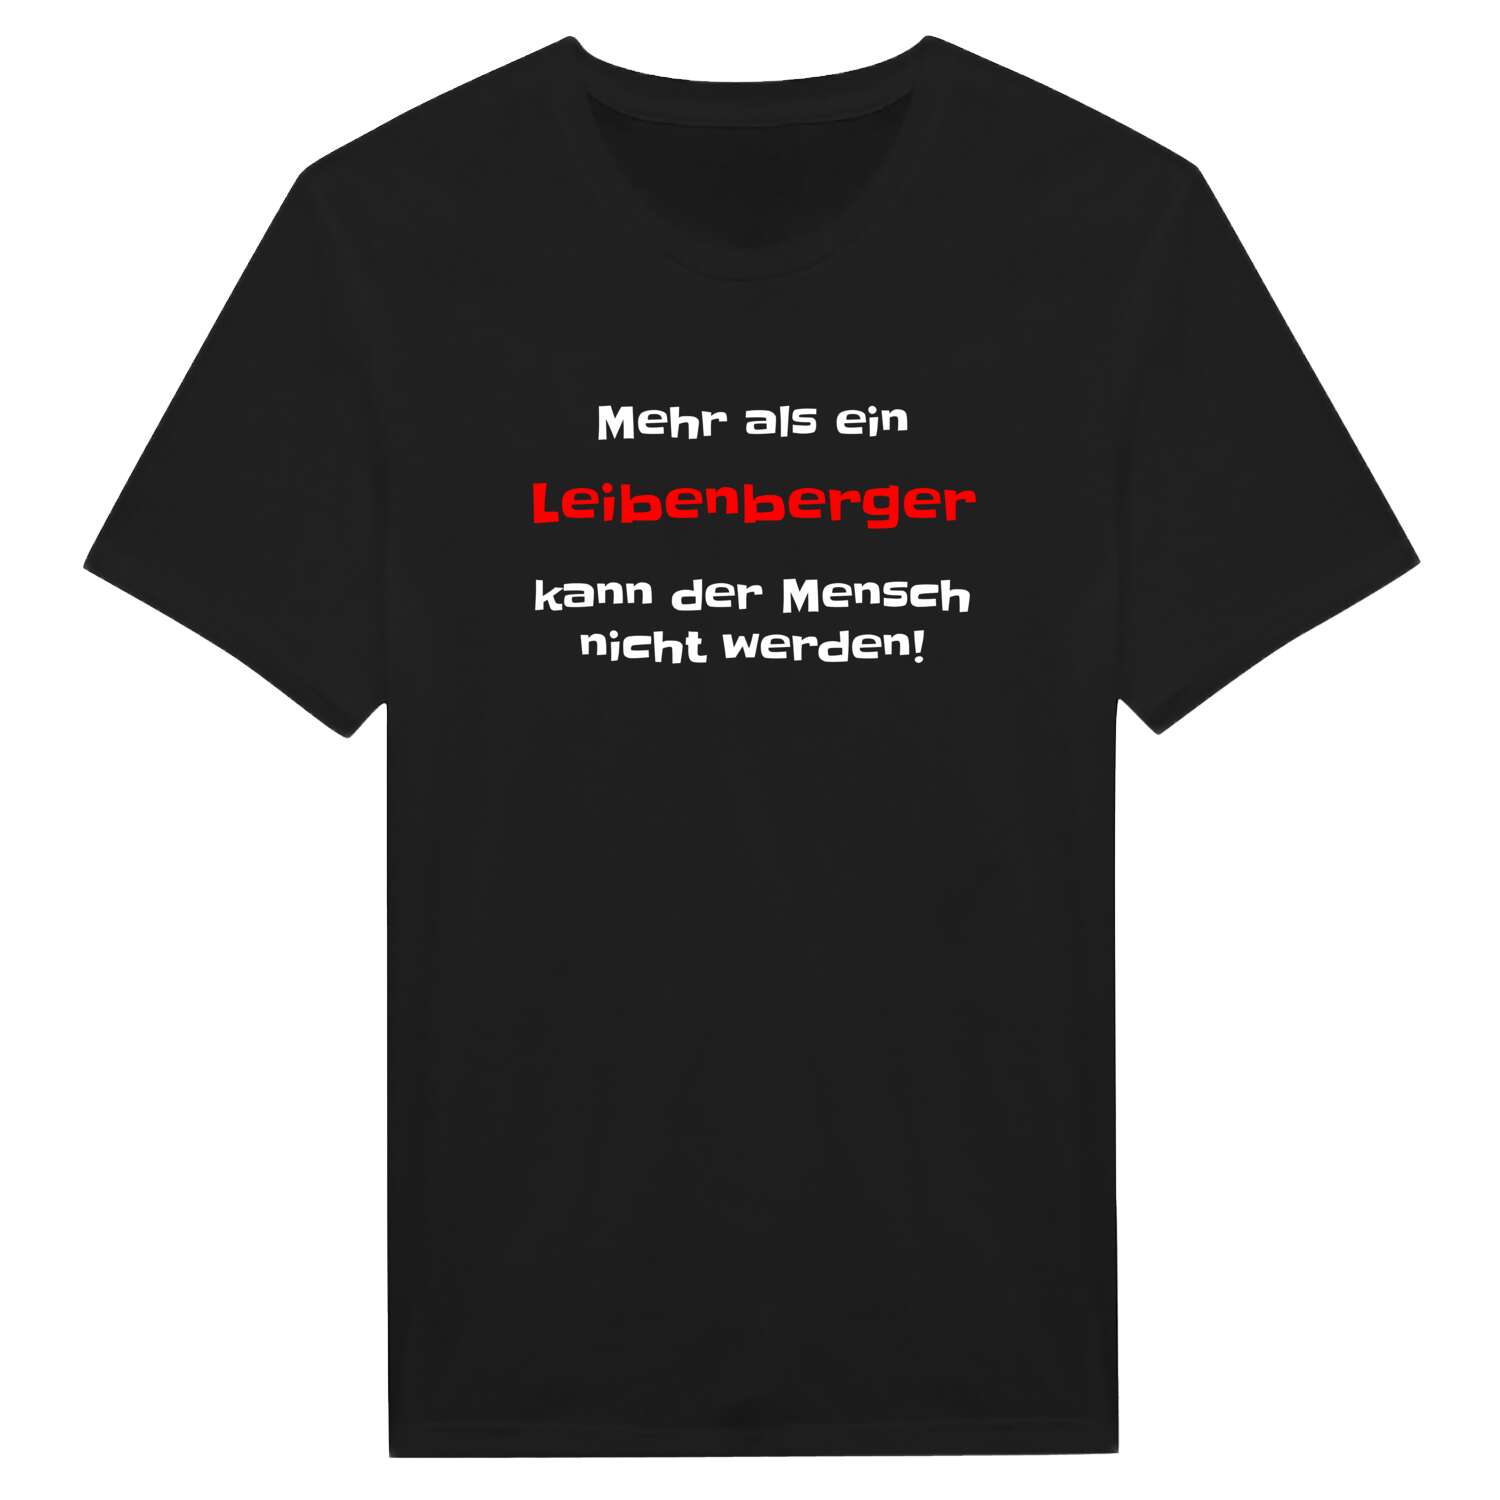 Leibenberg T-Shirt »Mehr als ein«